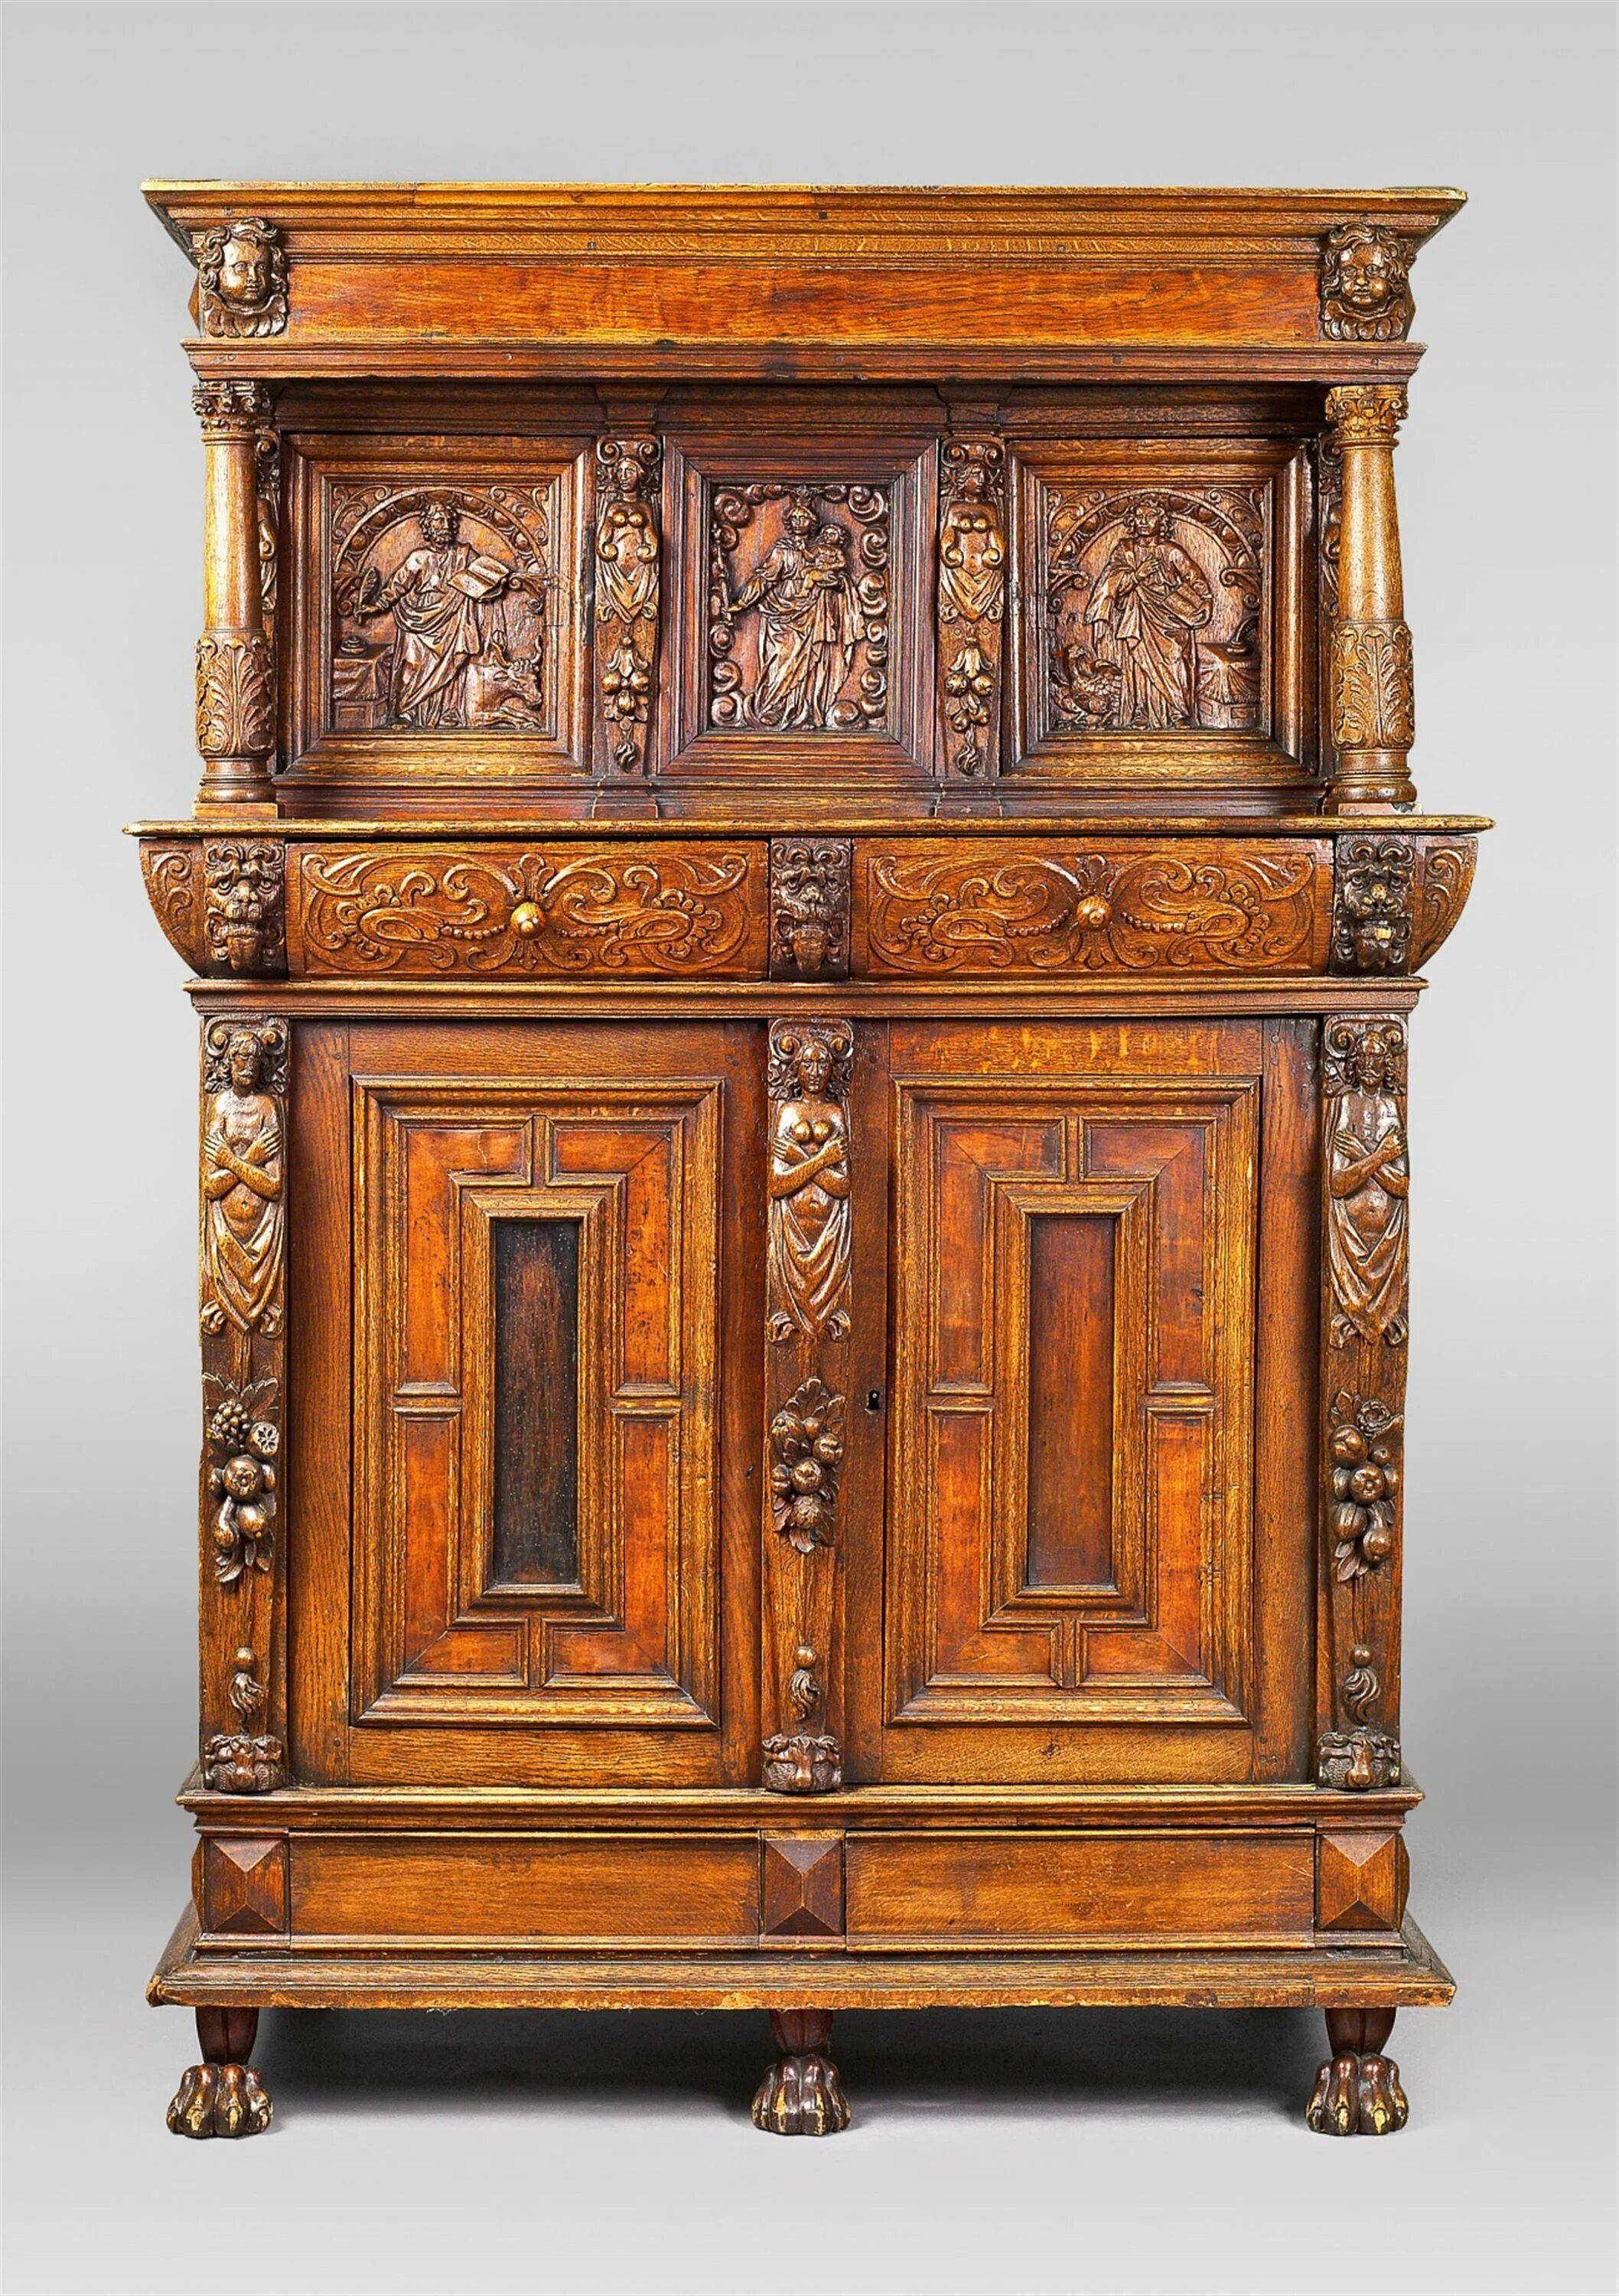 Мебель 17 века. Старинная мебель. Старинная мебель из дерева. Испанская мебель 17 века. Антикварная мебель с ключами.